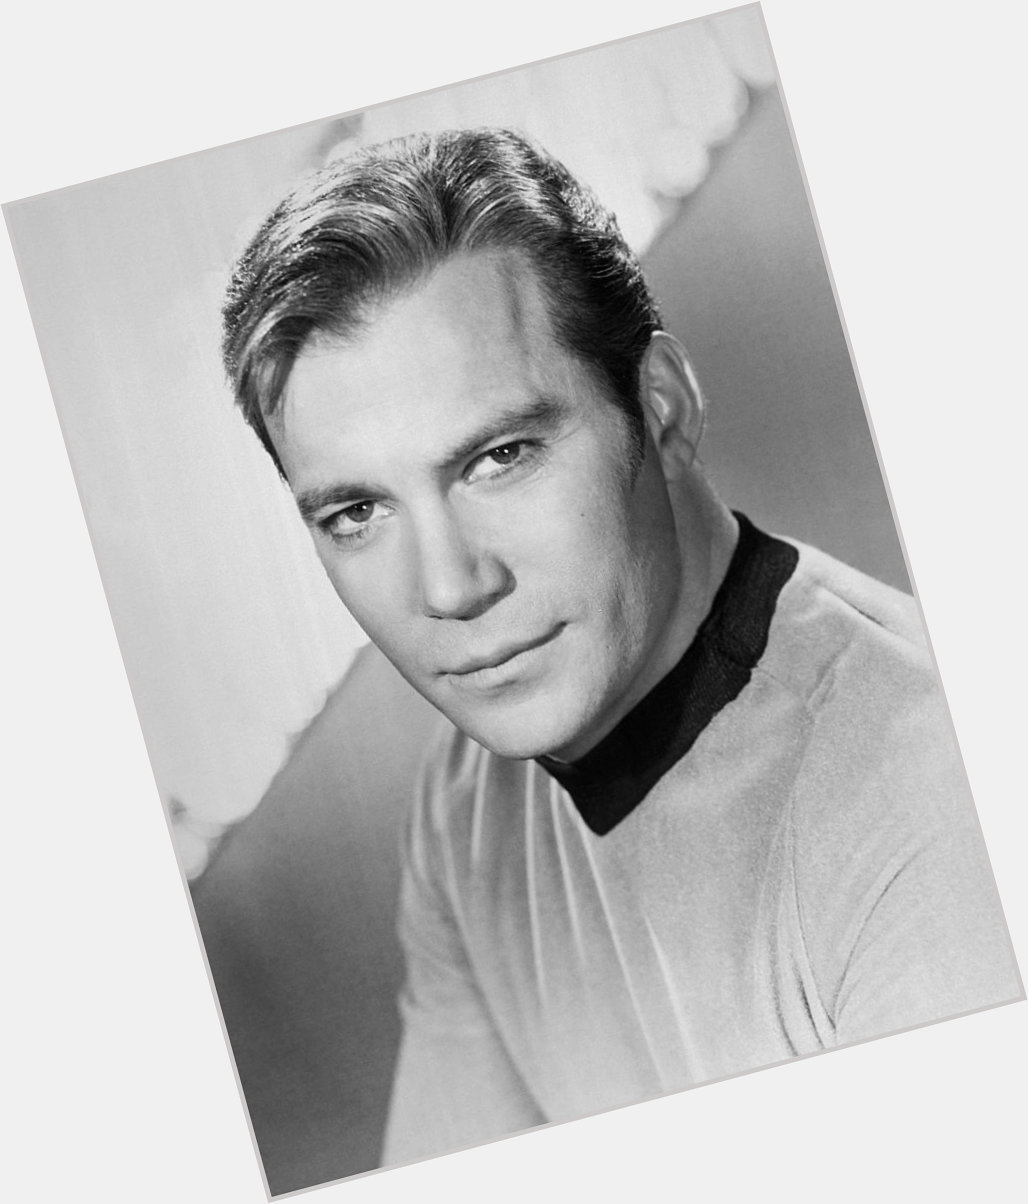  Happy birthday to William Shatner, still boldly going at 91. 